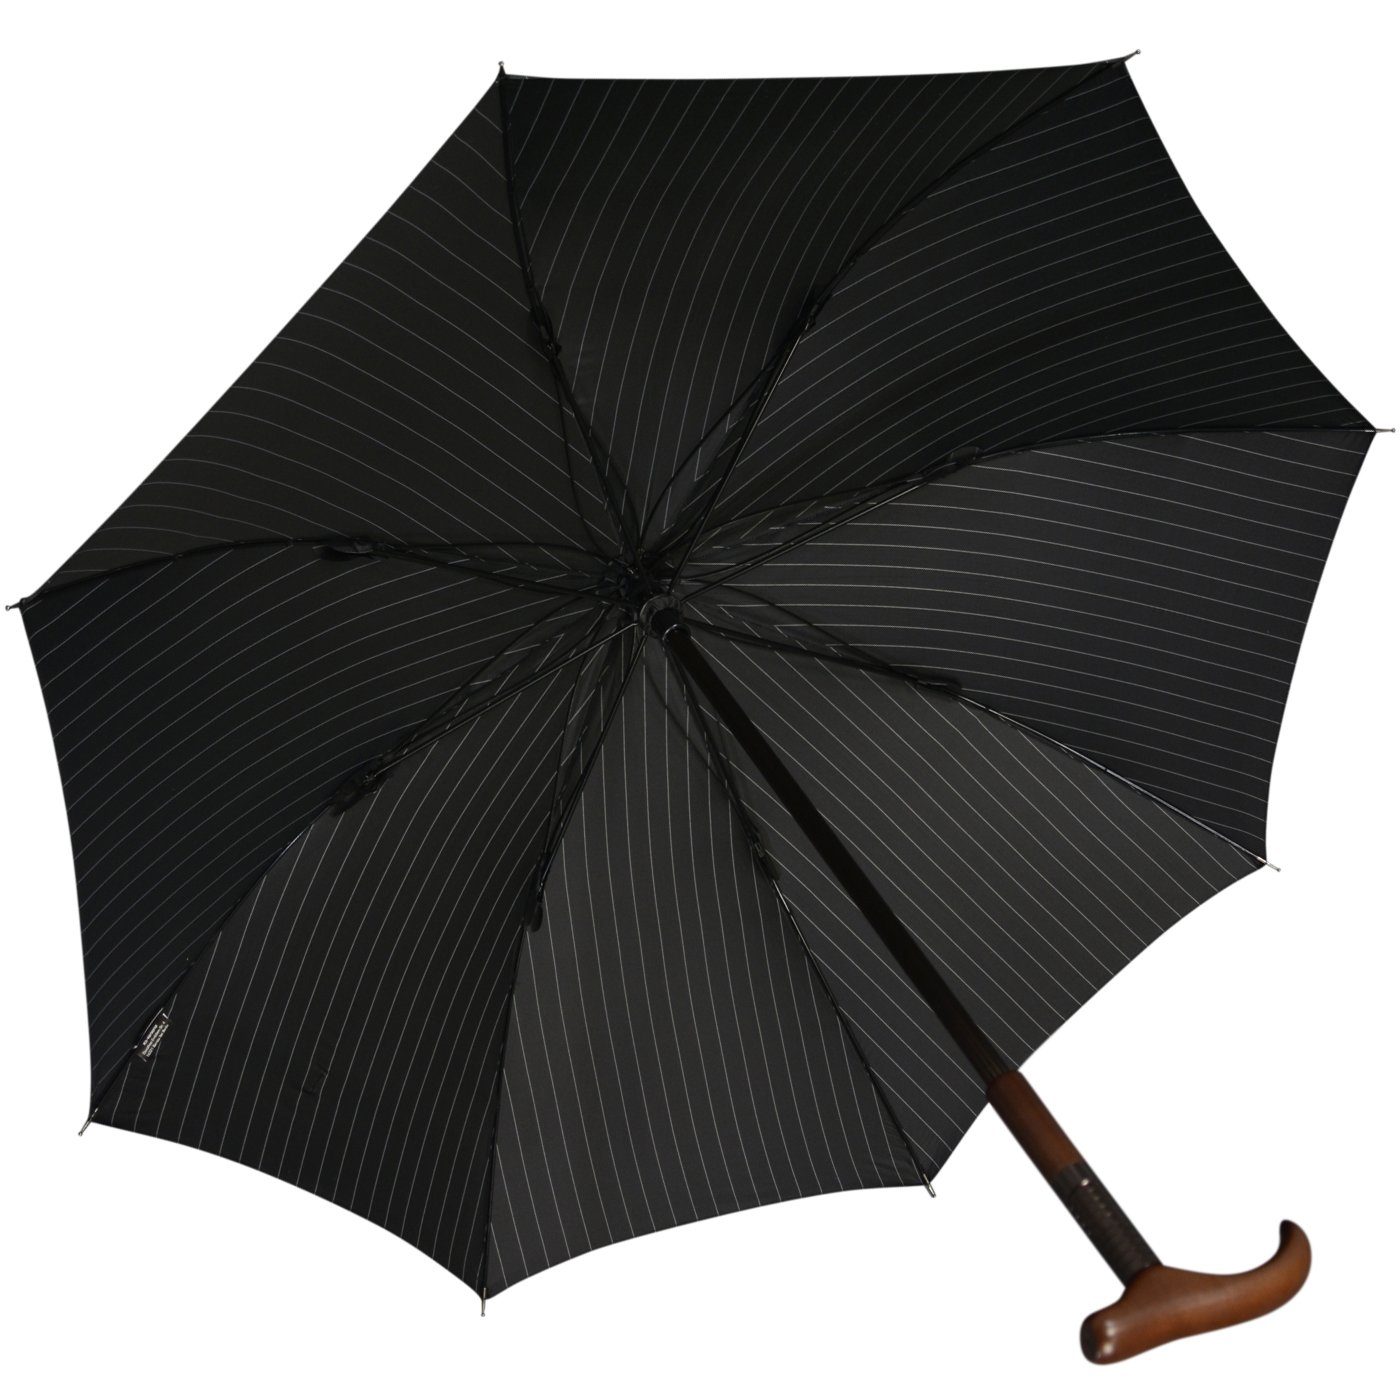 Stützschirm stabil, sehr Nadelstreifen Holzgriff höhenverstellbar schwarz-weiß iX-brella Langregenschirm